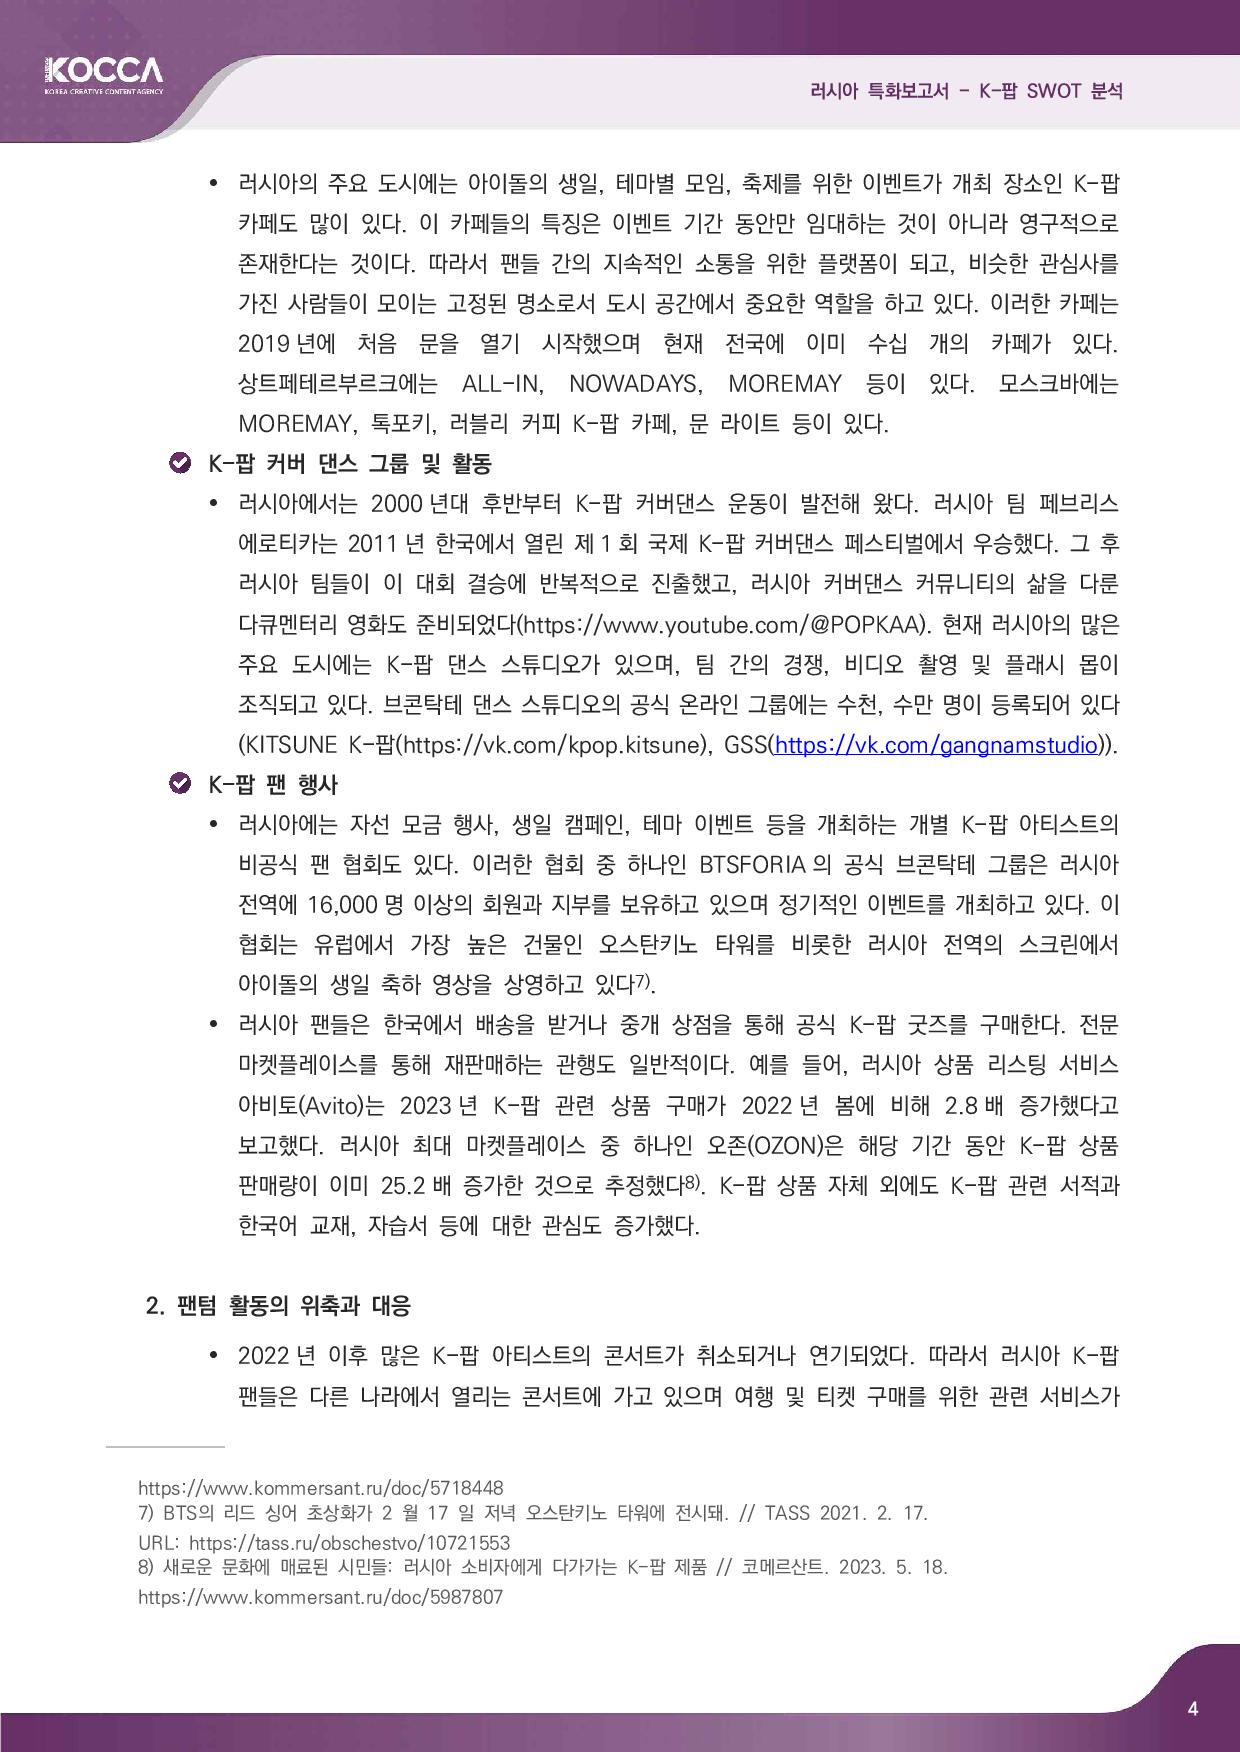 2. 러시아 특화보고서_K-pop SWOT 분석 (3)-page-006.jpg